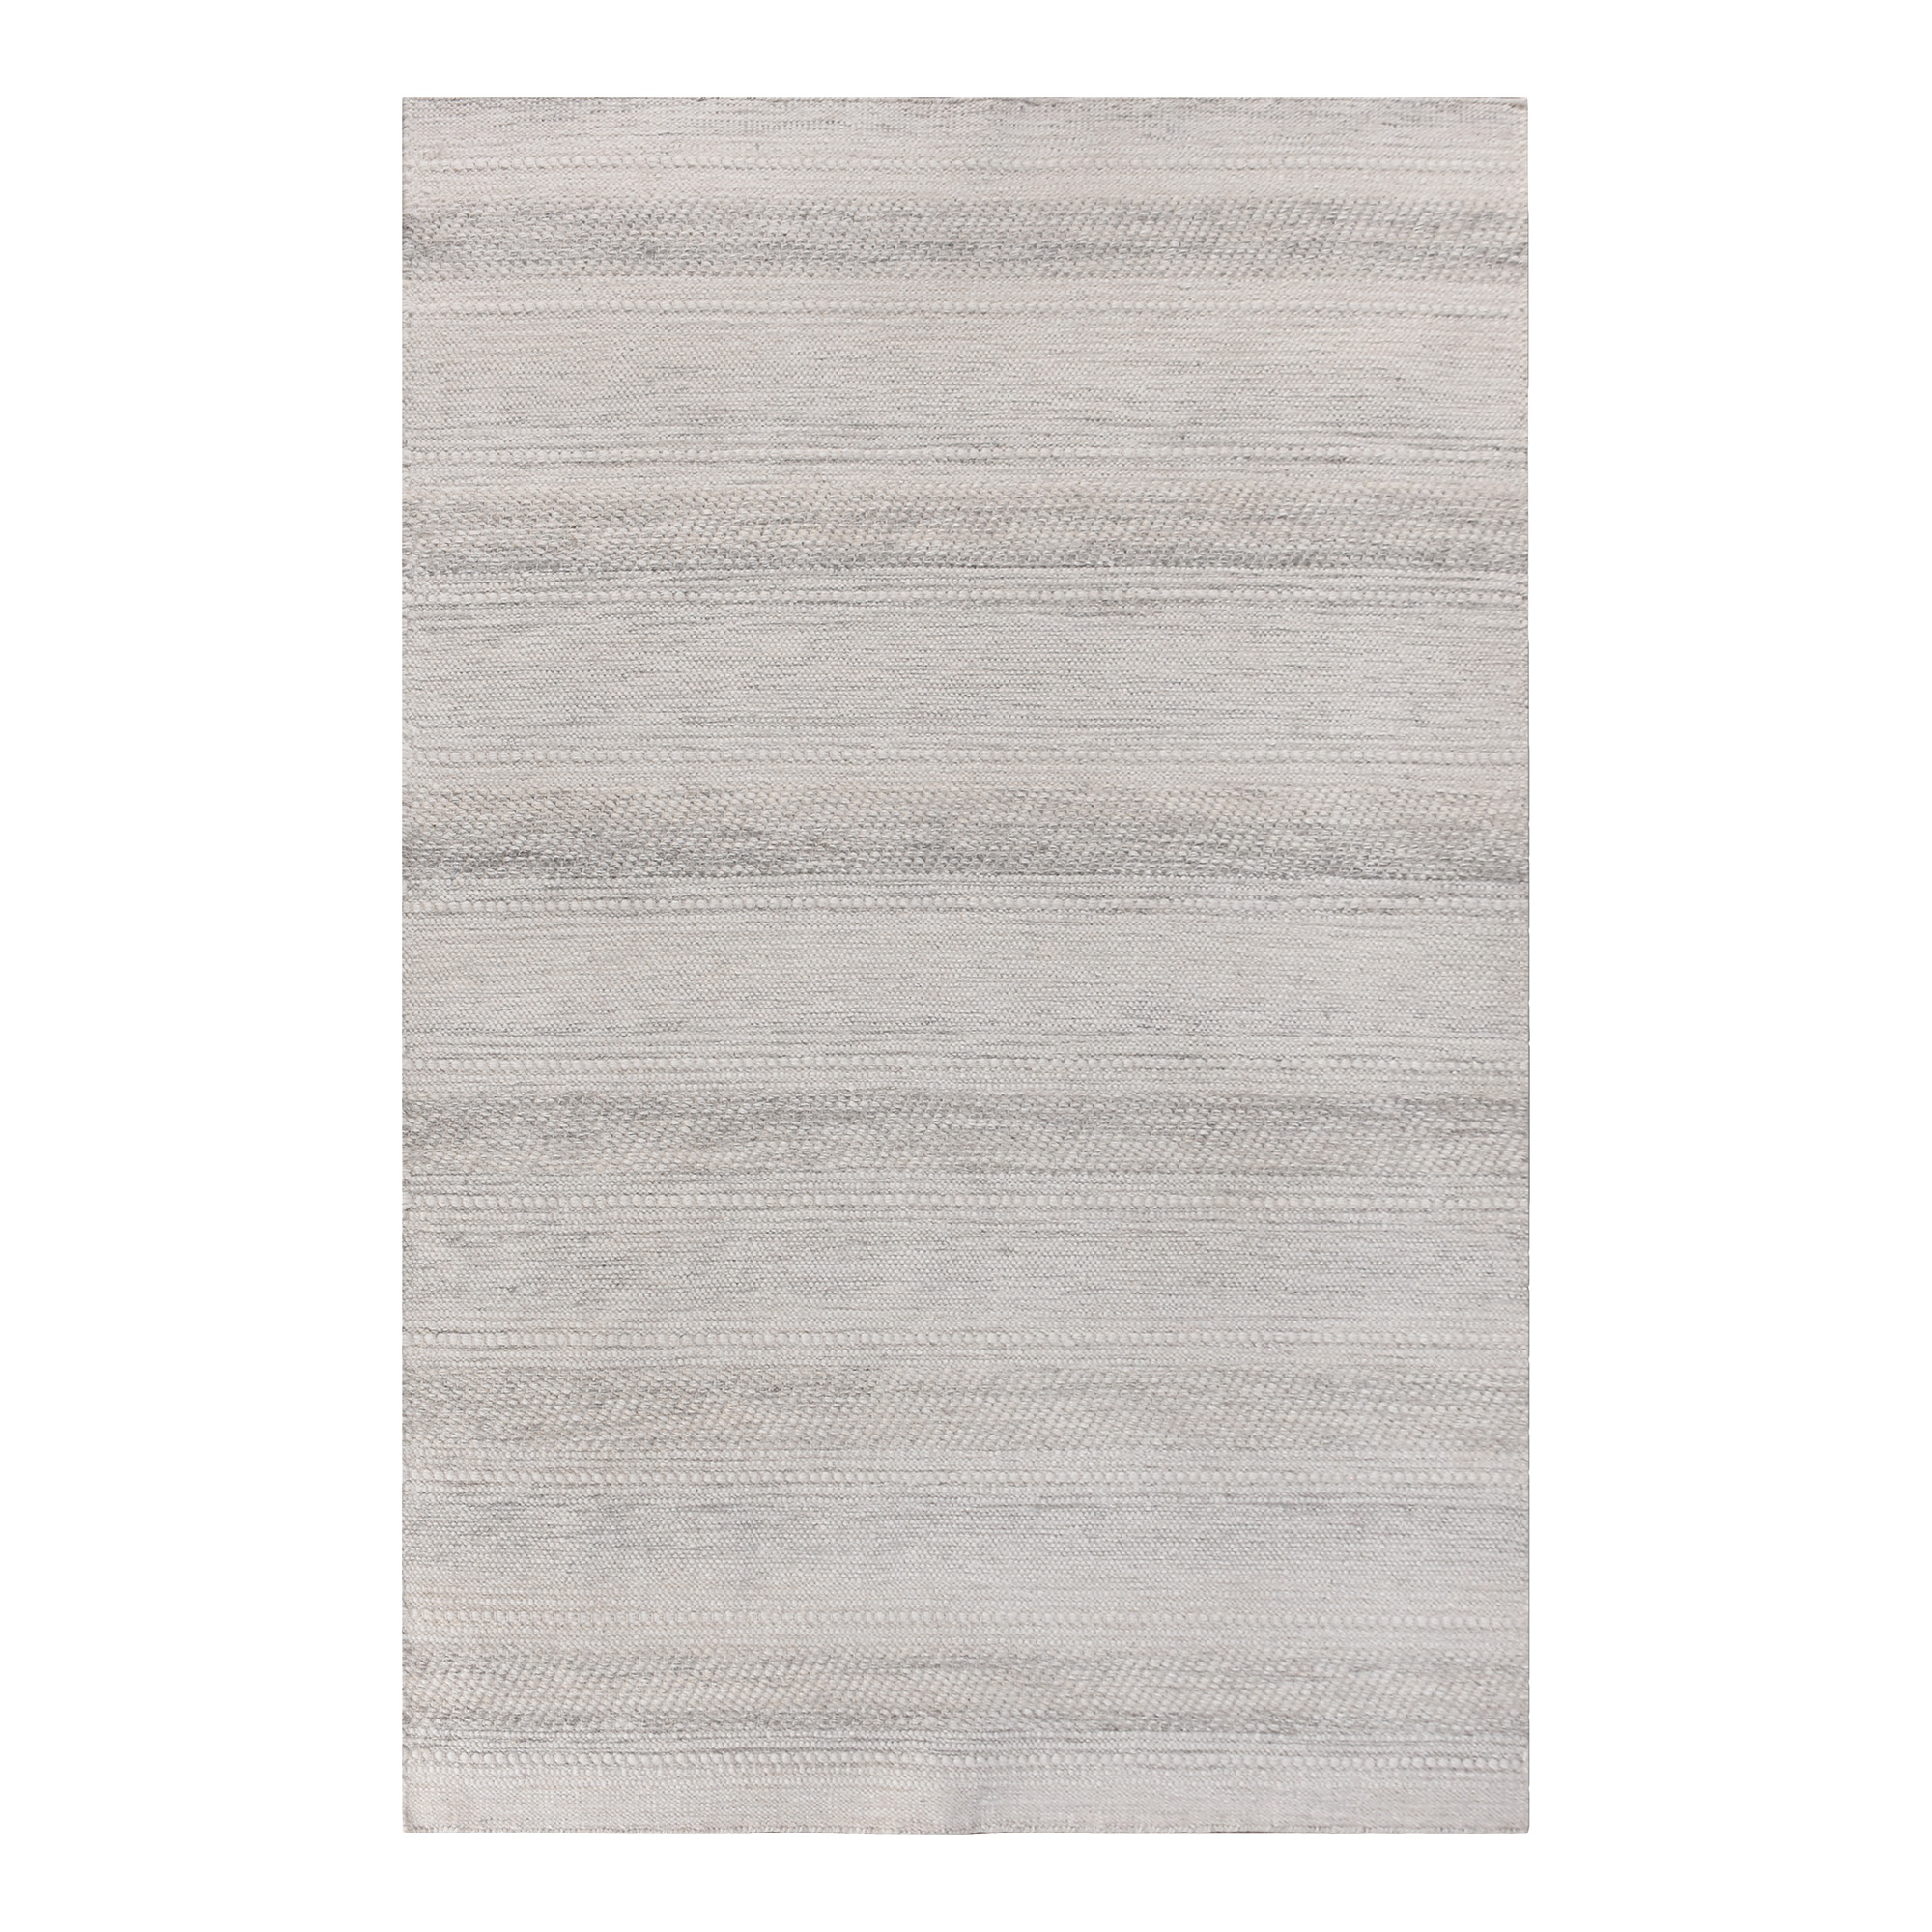 HOUSE NORDIC Adoni gulvtæppe, rektangulær - råhvid/lysegrå uld/bomuld (200x300)